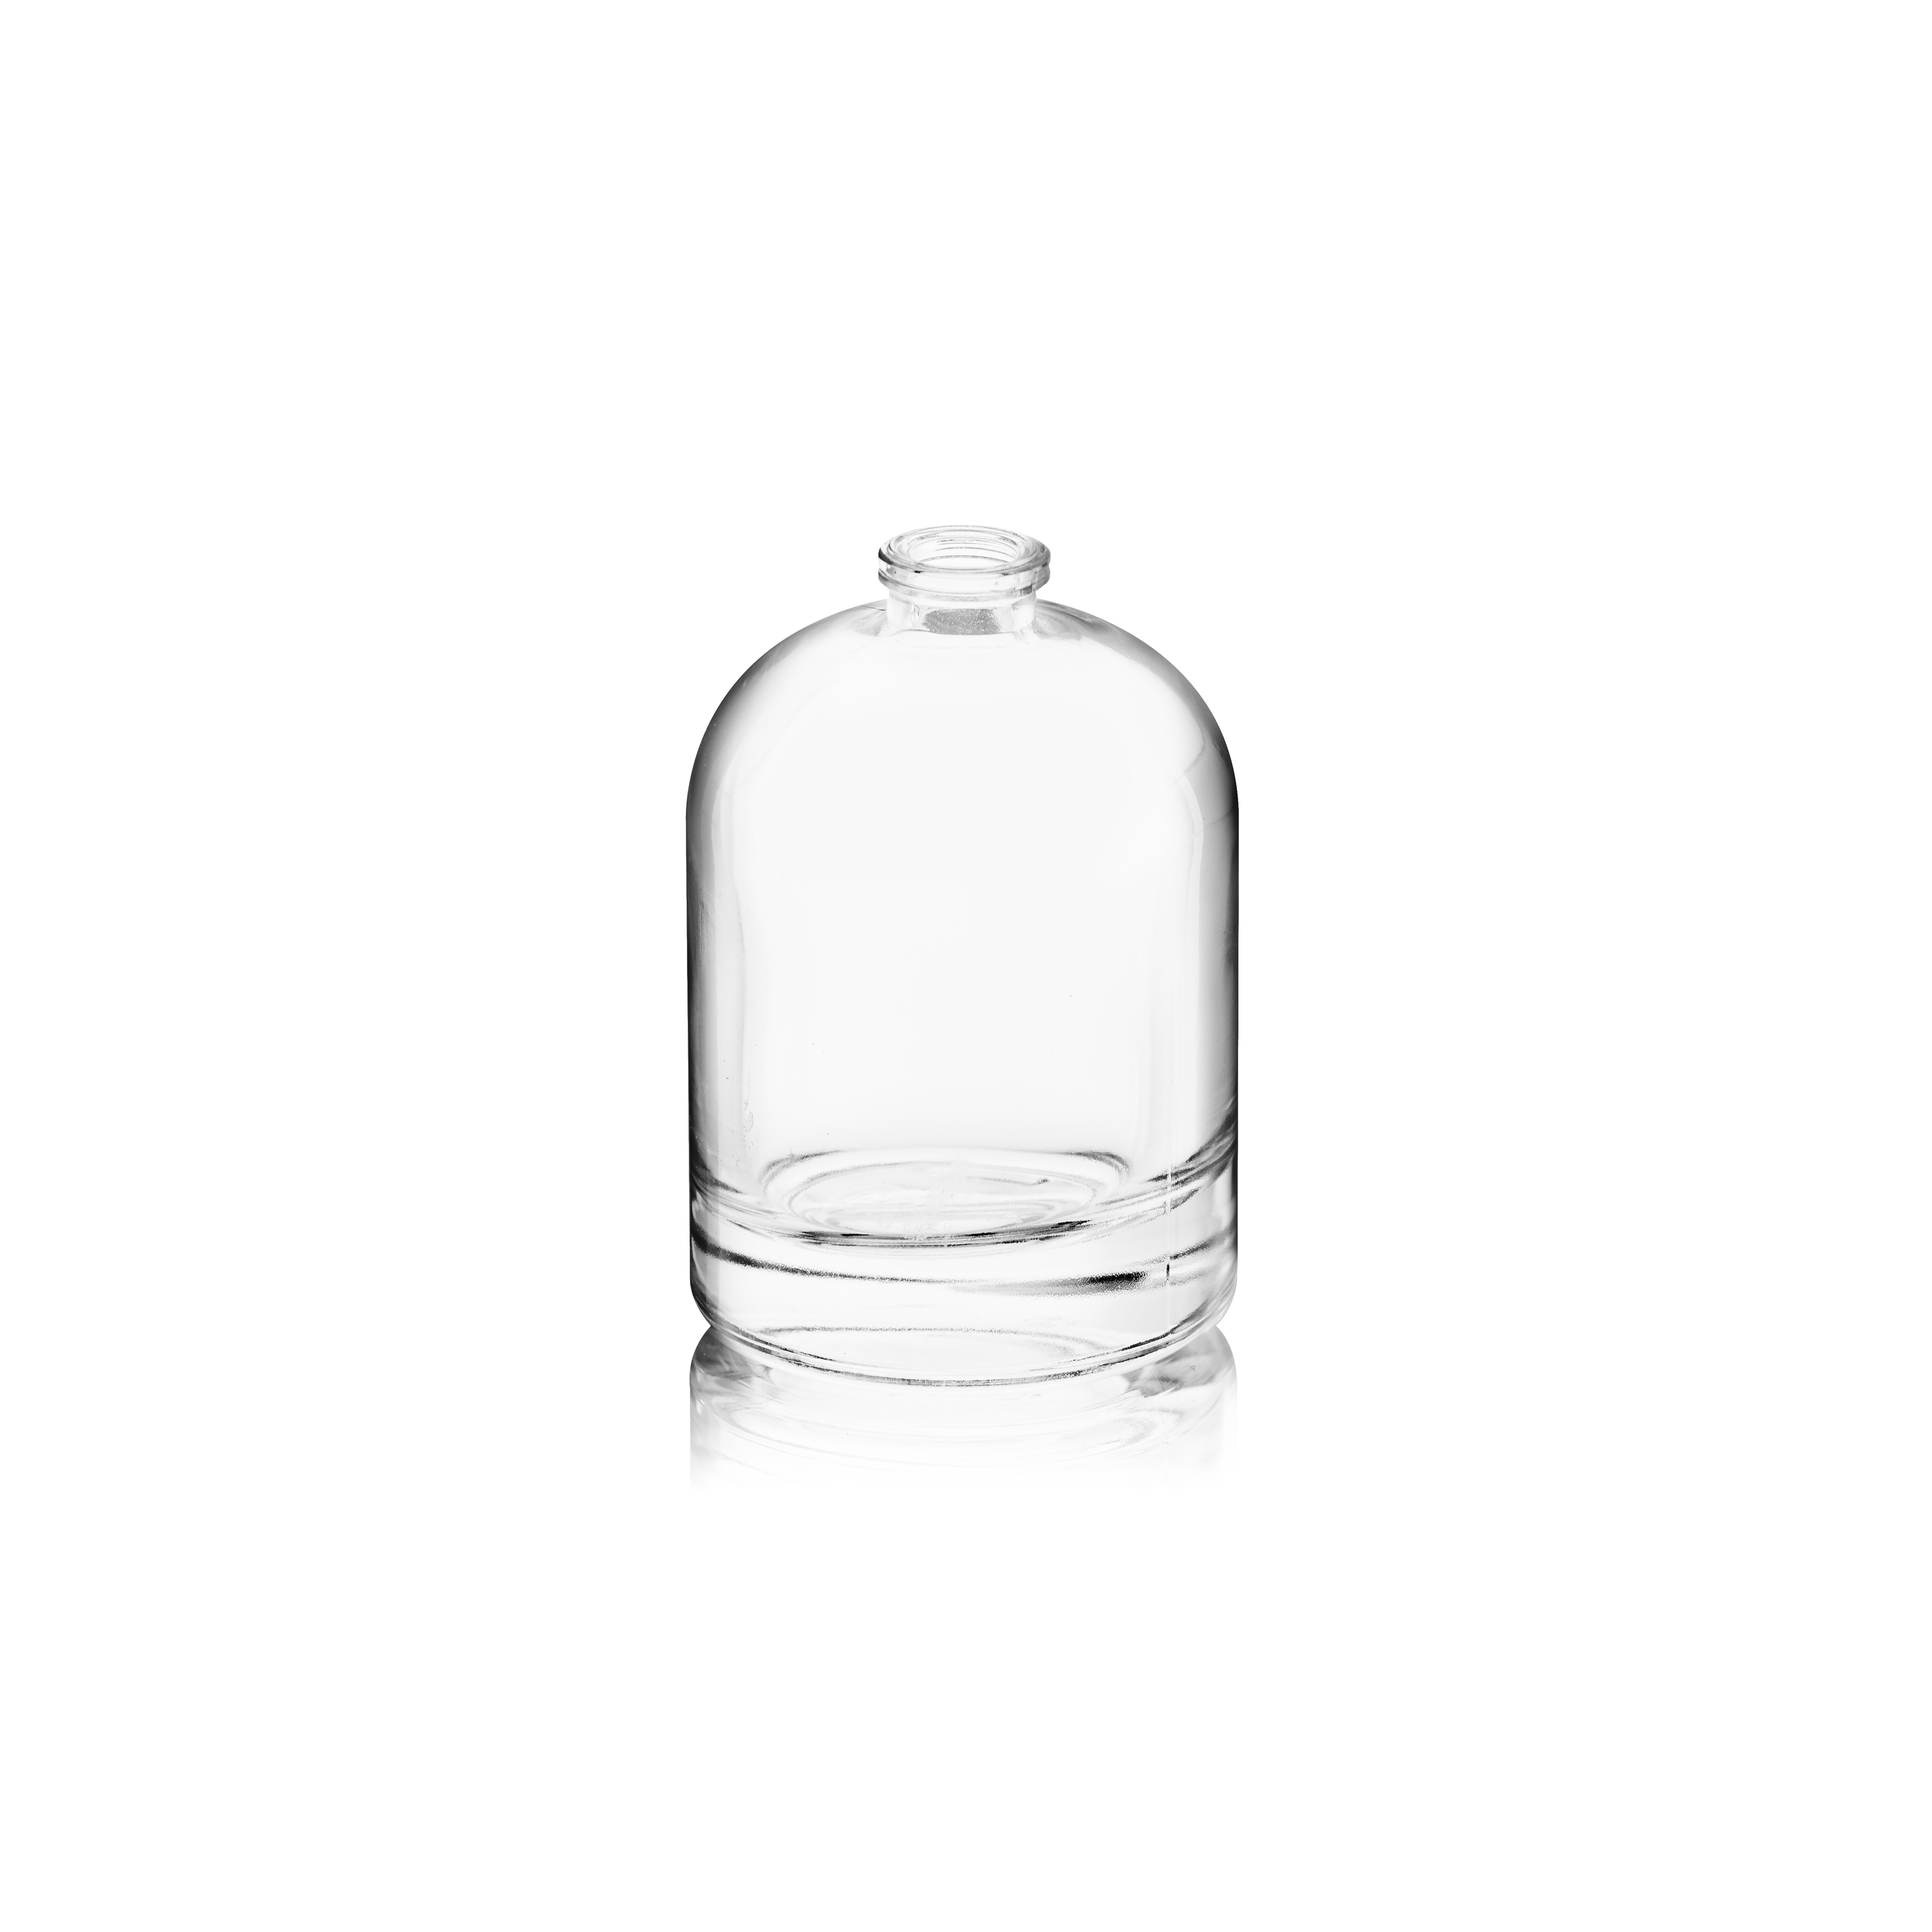 Perfume bottle Hazel 50 ml, FEA 15, Flint